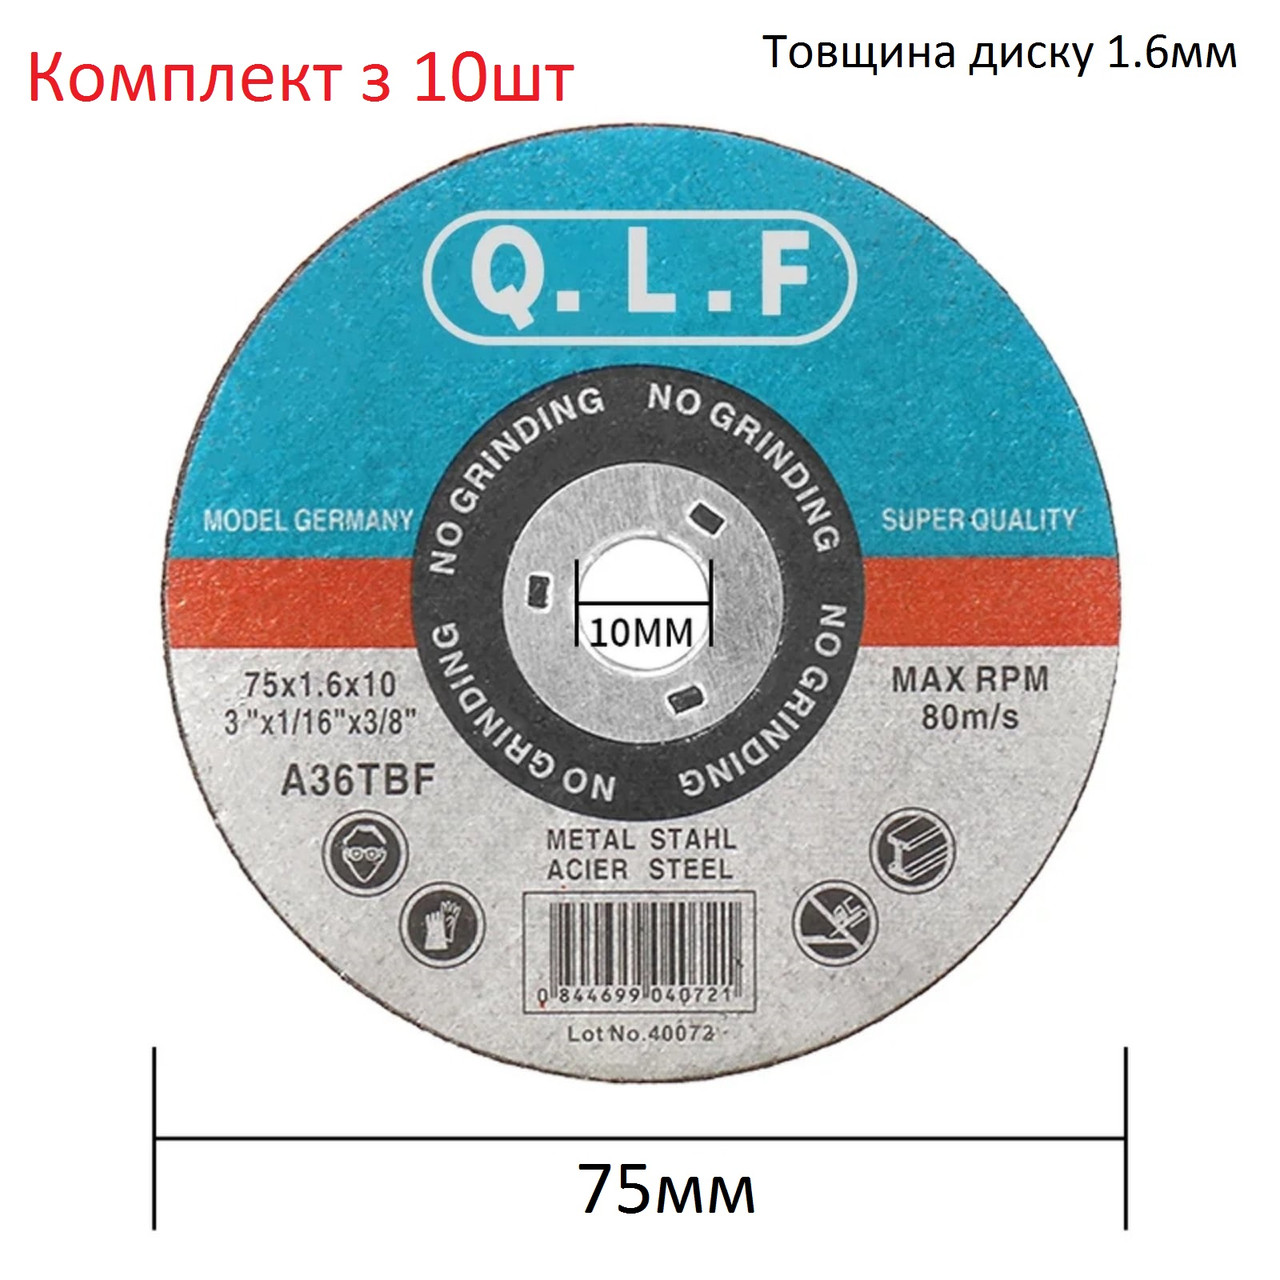 Набор дисков Q.L.F на 75мм для резки по металлу 10шт для мини УШМ мини болгарки